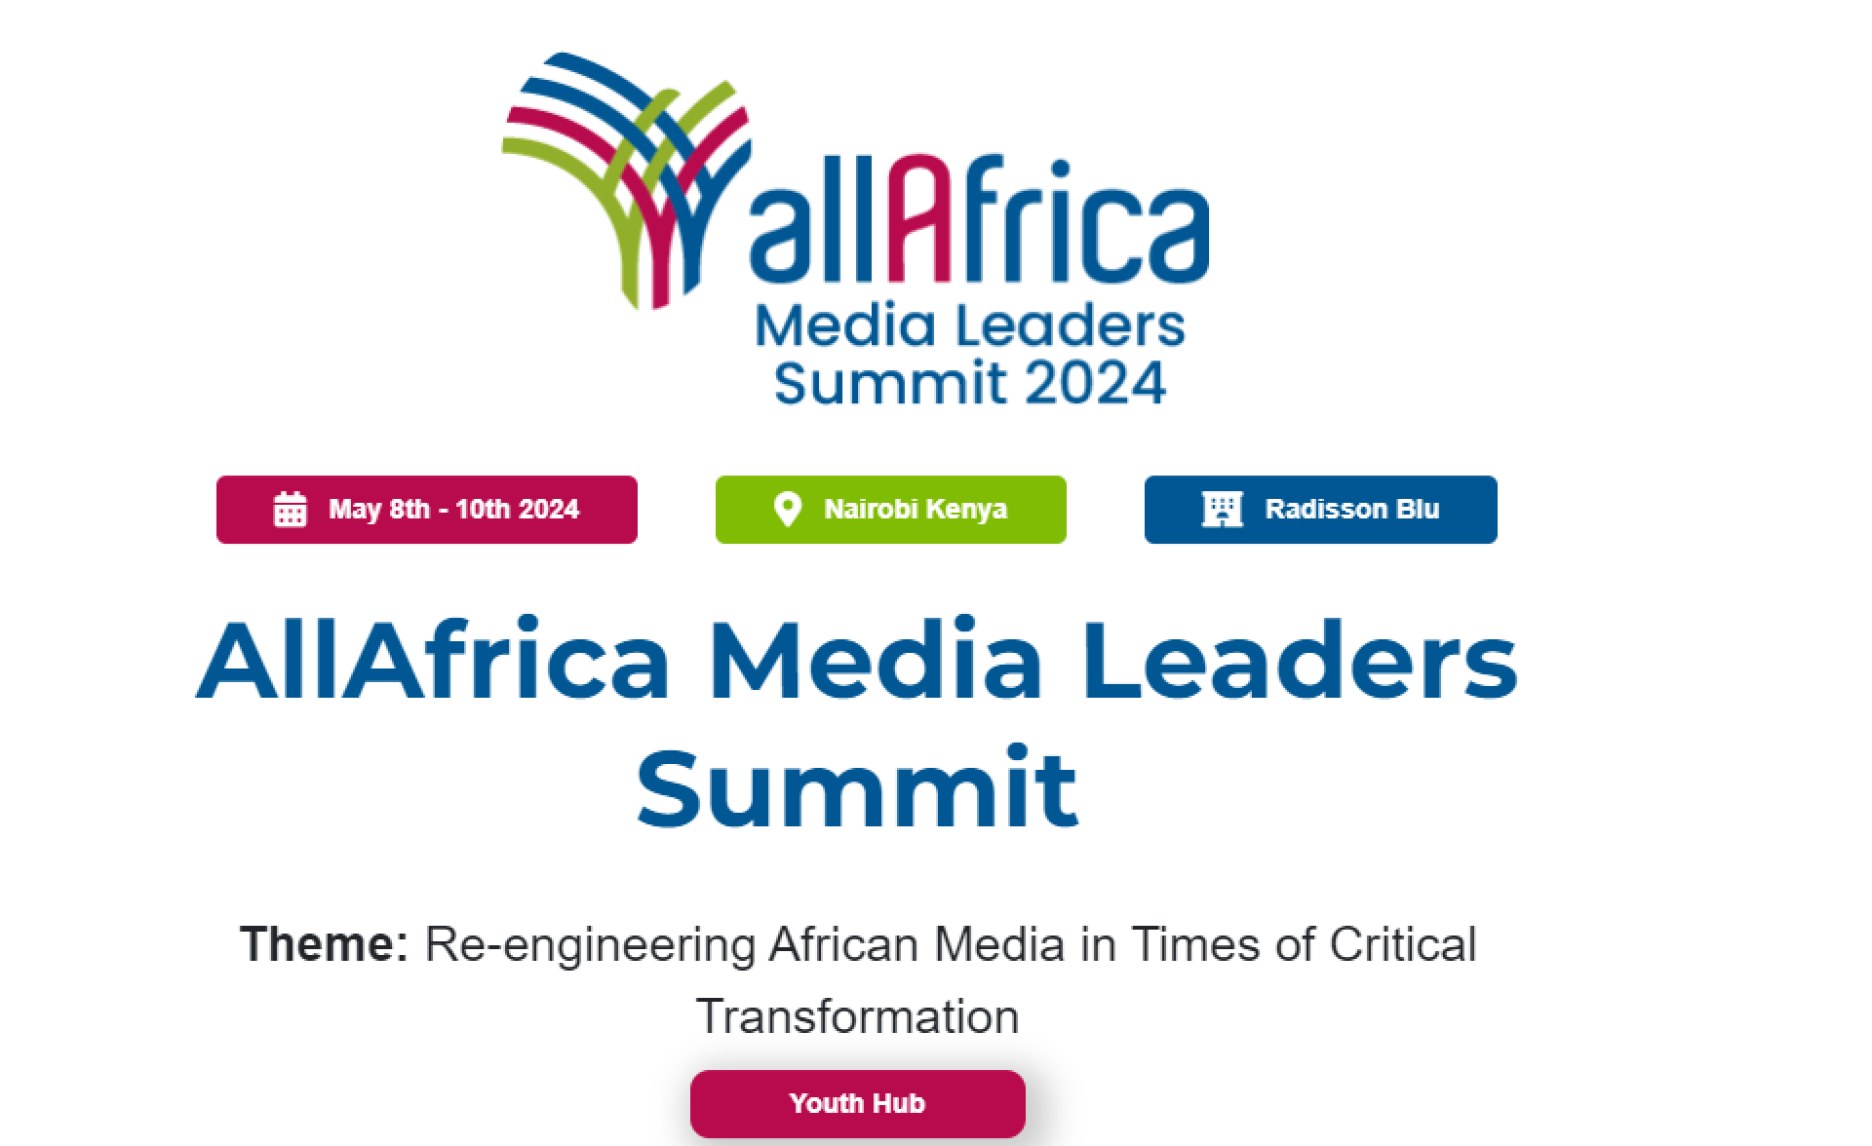 allafrica.com event